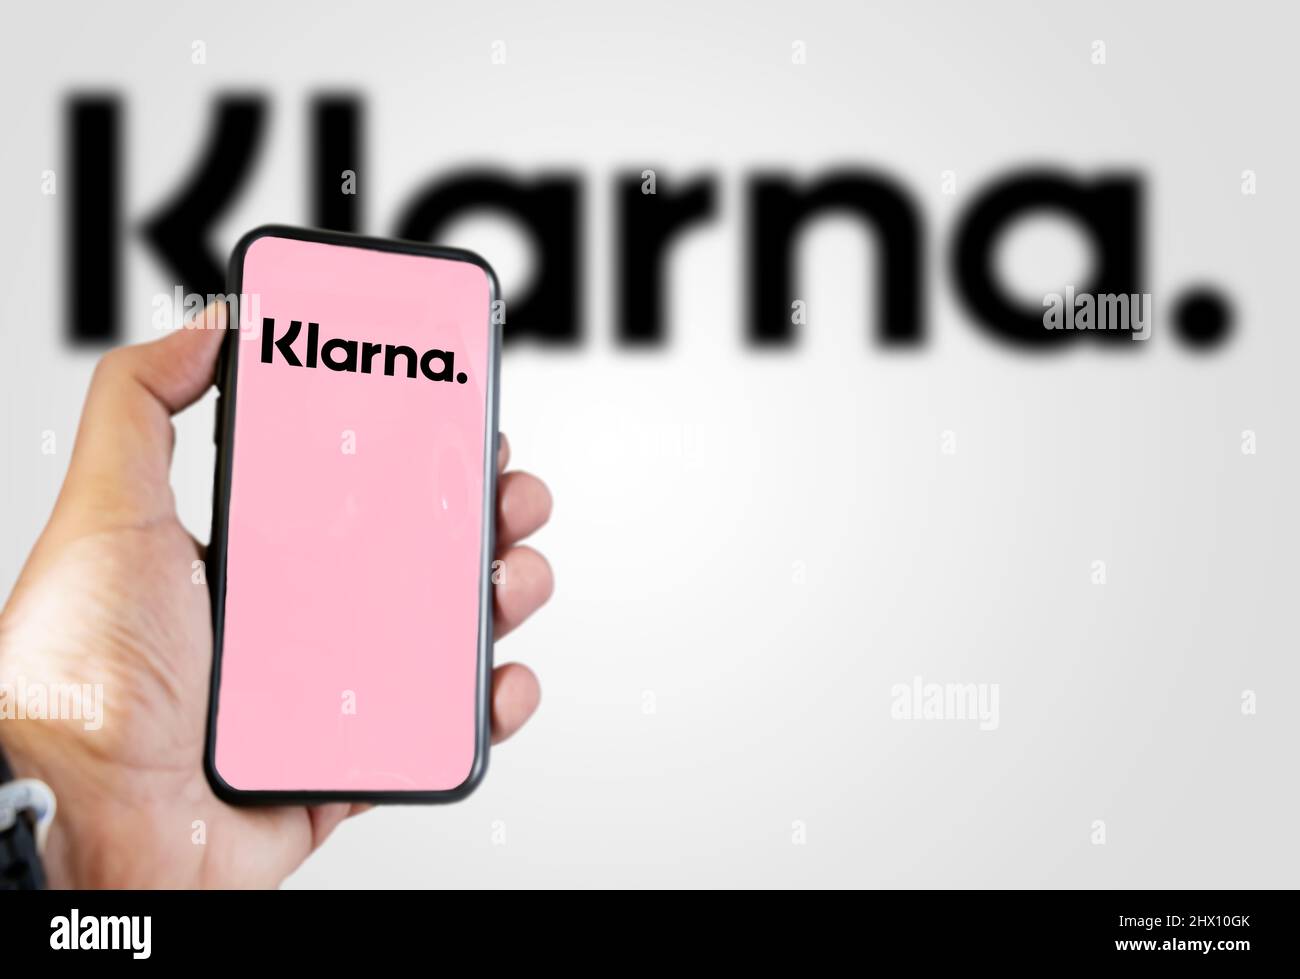 Roma, Italia, febbraio 2022: Tenere a mano un dispositivo con l'app mobile Klarna sullo schermo. Klarna è il più grande start-up privato fin-tech in Europa. Foto Stock